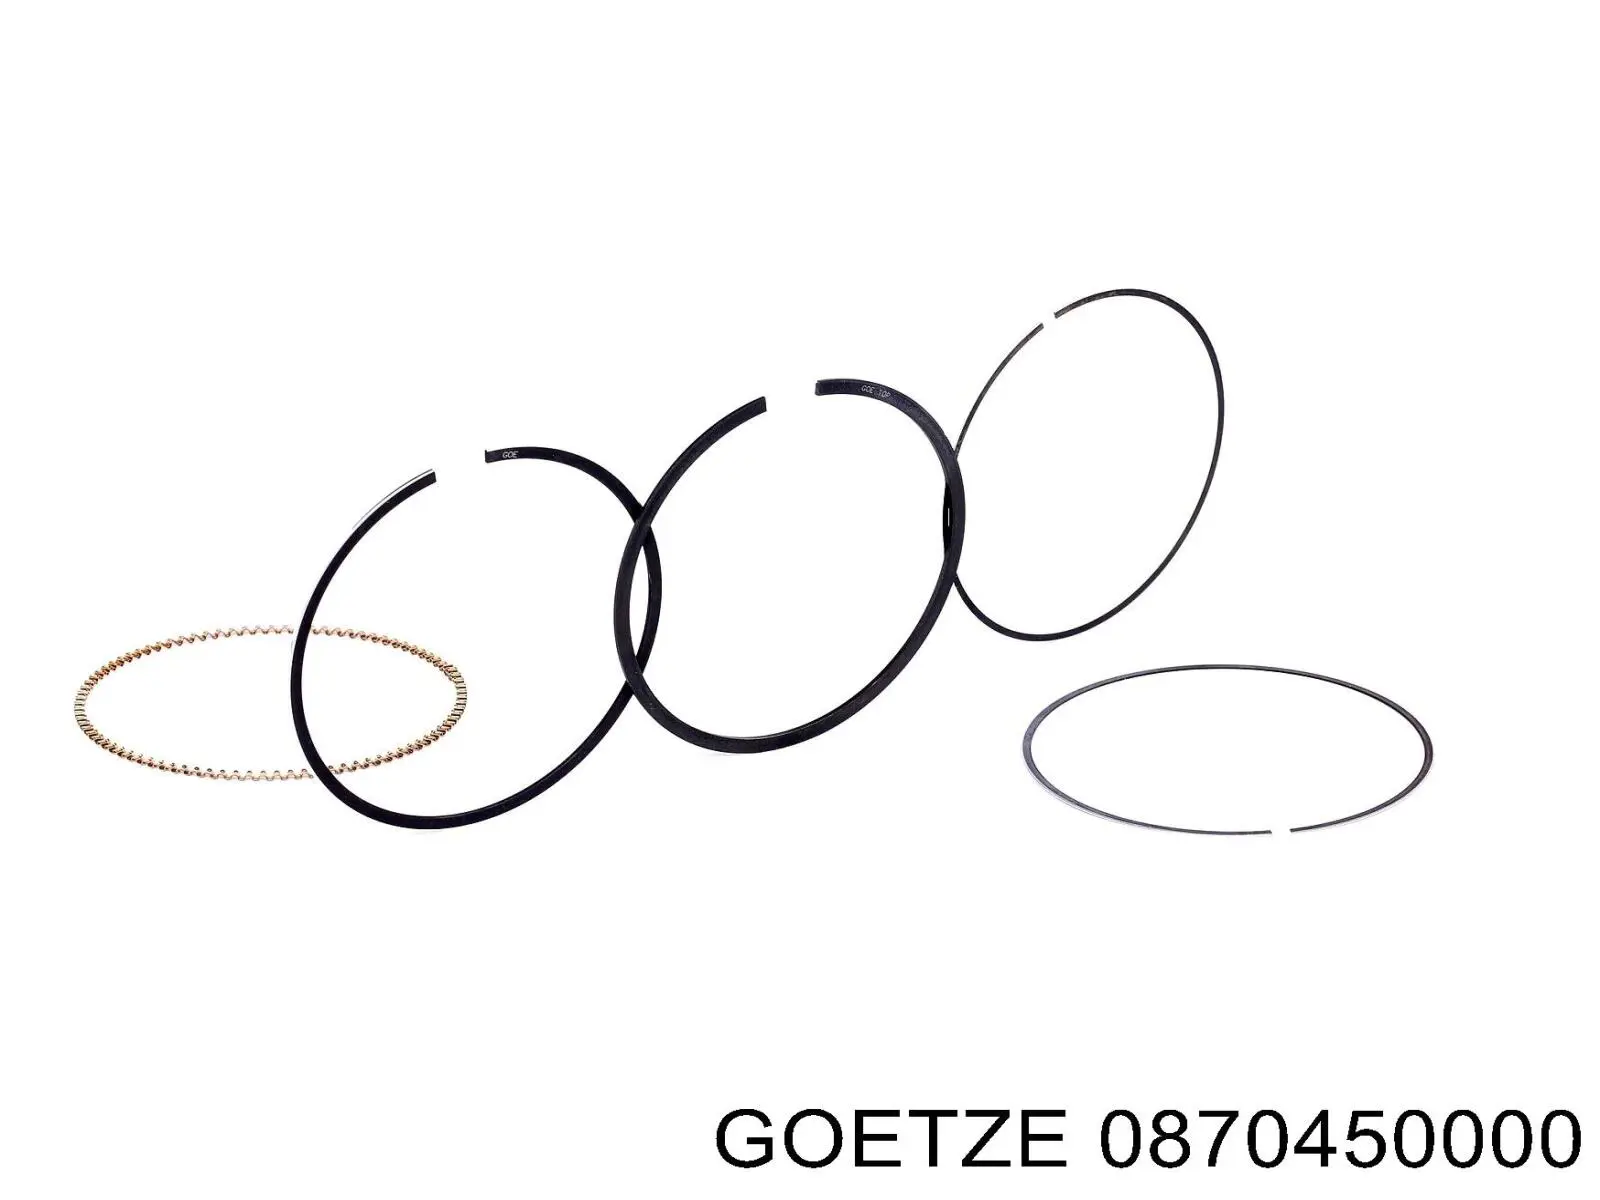 08-704500-00 Goetze кольца поршневые на 1 цилиндр, std.